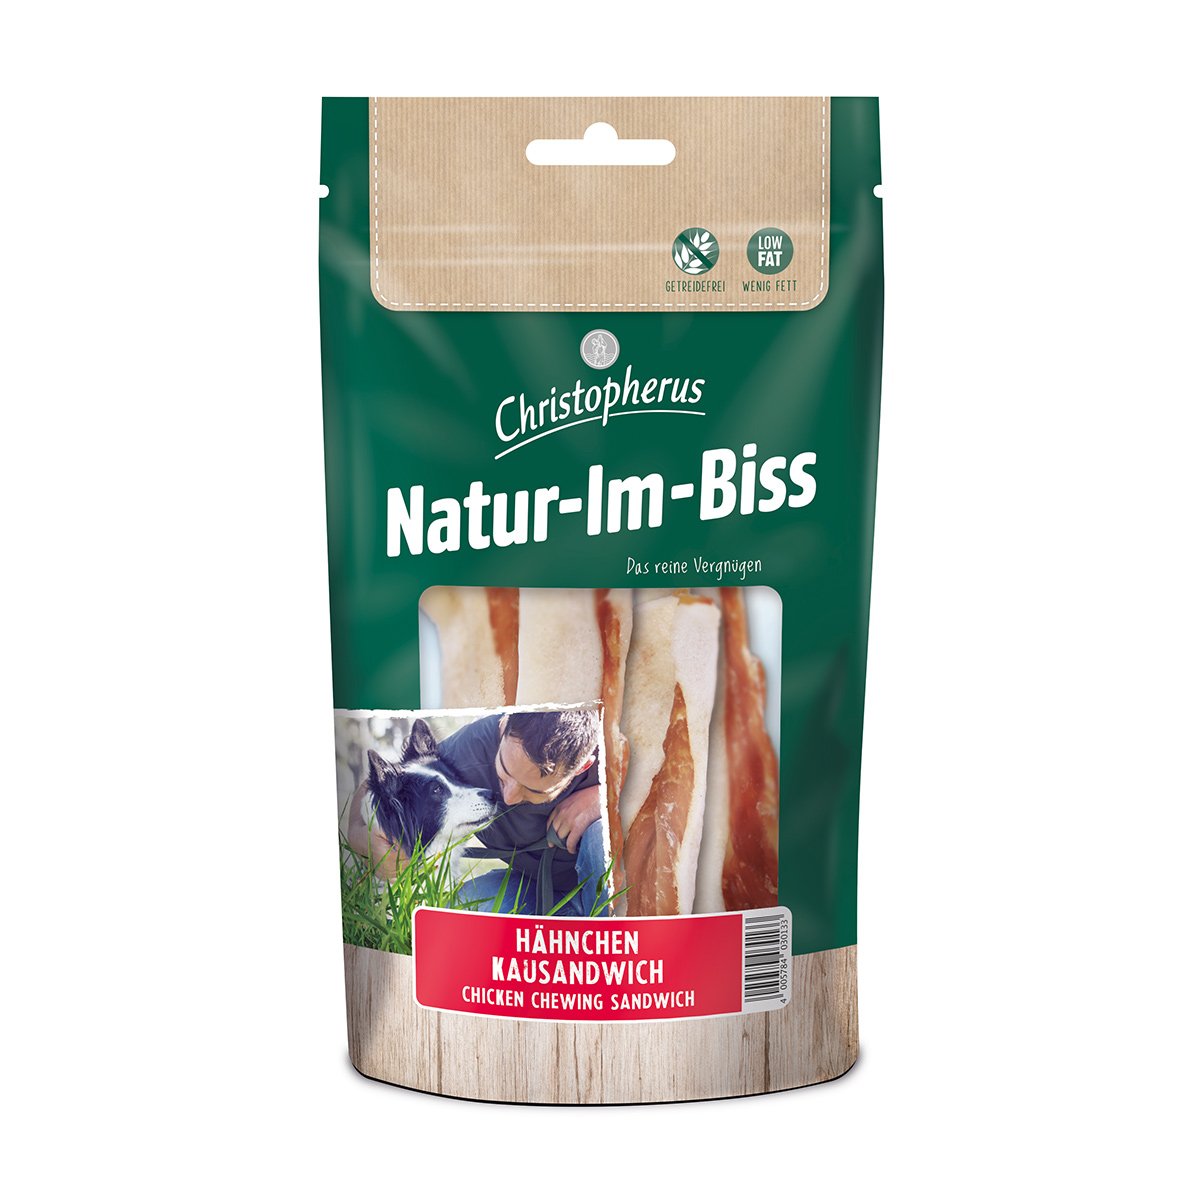 Christopherus Natur-Im-Biss žvýkací sendvič, 70 g 70g